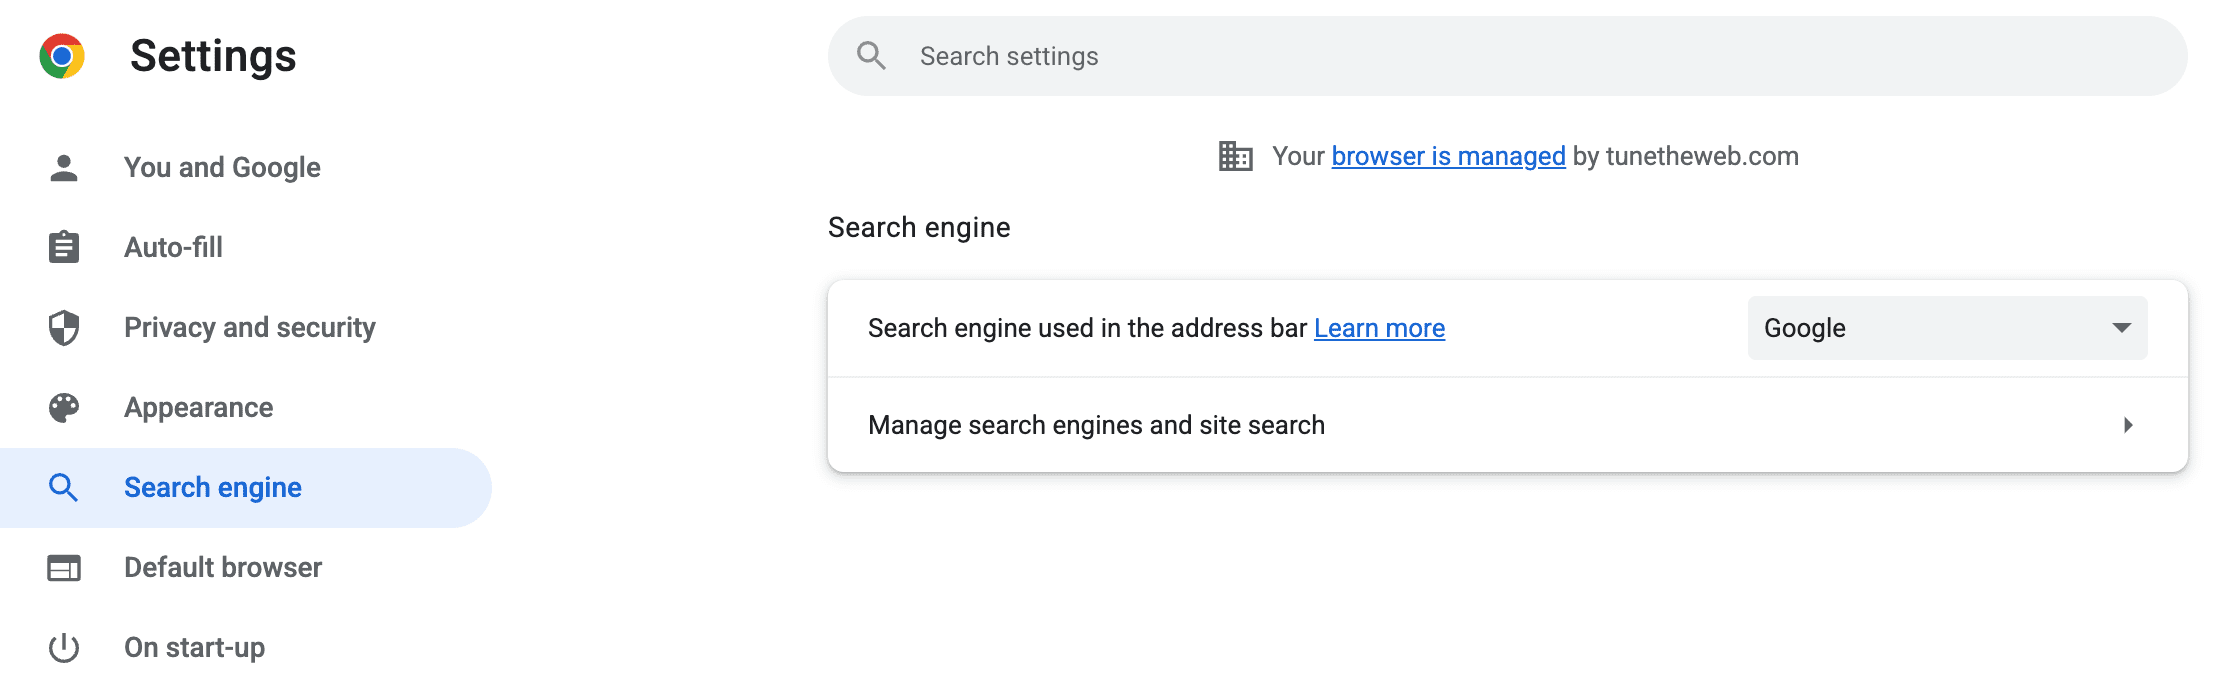 Captura de pantalla de la página de configuración de Chrome para motores de búsqueda, en la que puedes &quot;Administrar las búsquedas en sitios y los motores de búsqueda&quot;